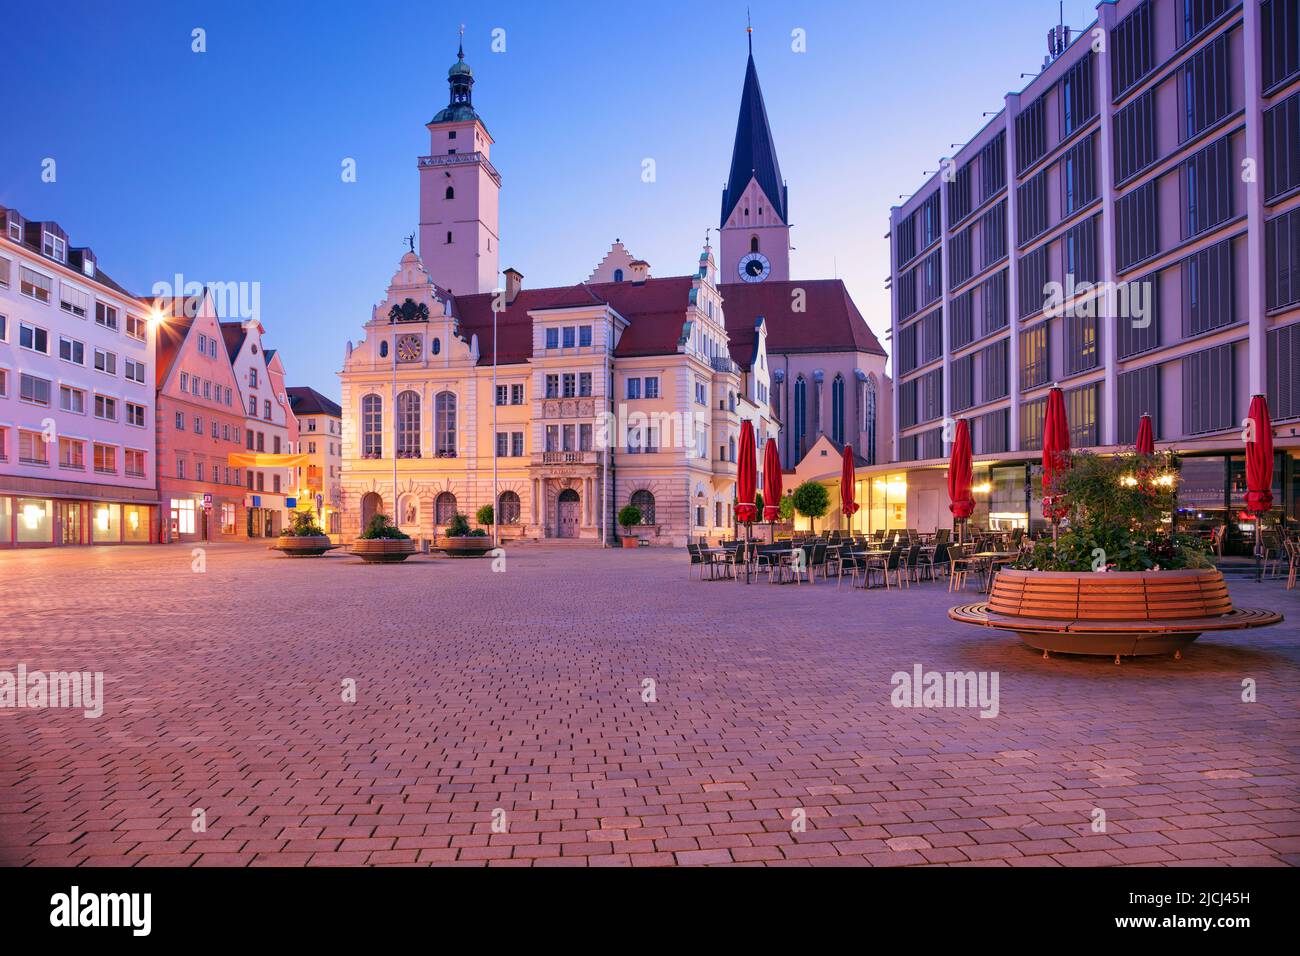 Ingolstadt, Allemagne. Image de paysage urbain du centre-ville d'Ingolstadt, en Allemagne avec hôtel de ville au lever du soleil. Banque D'Images